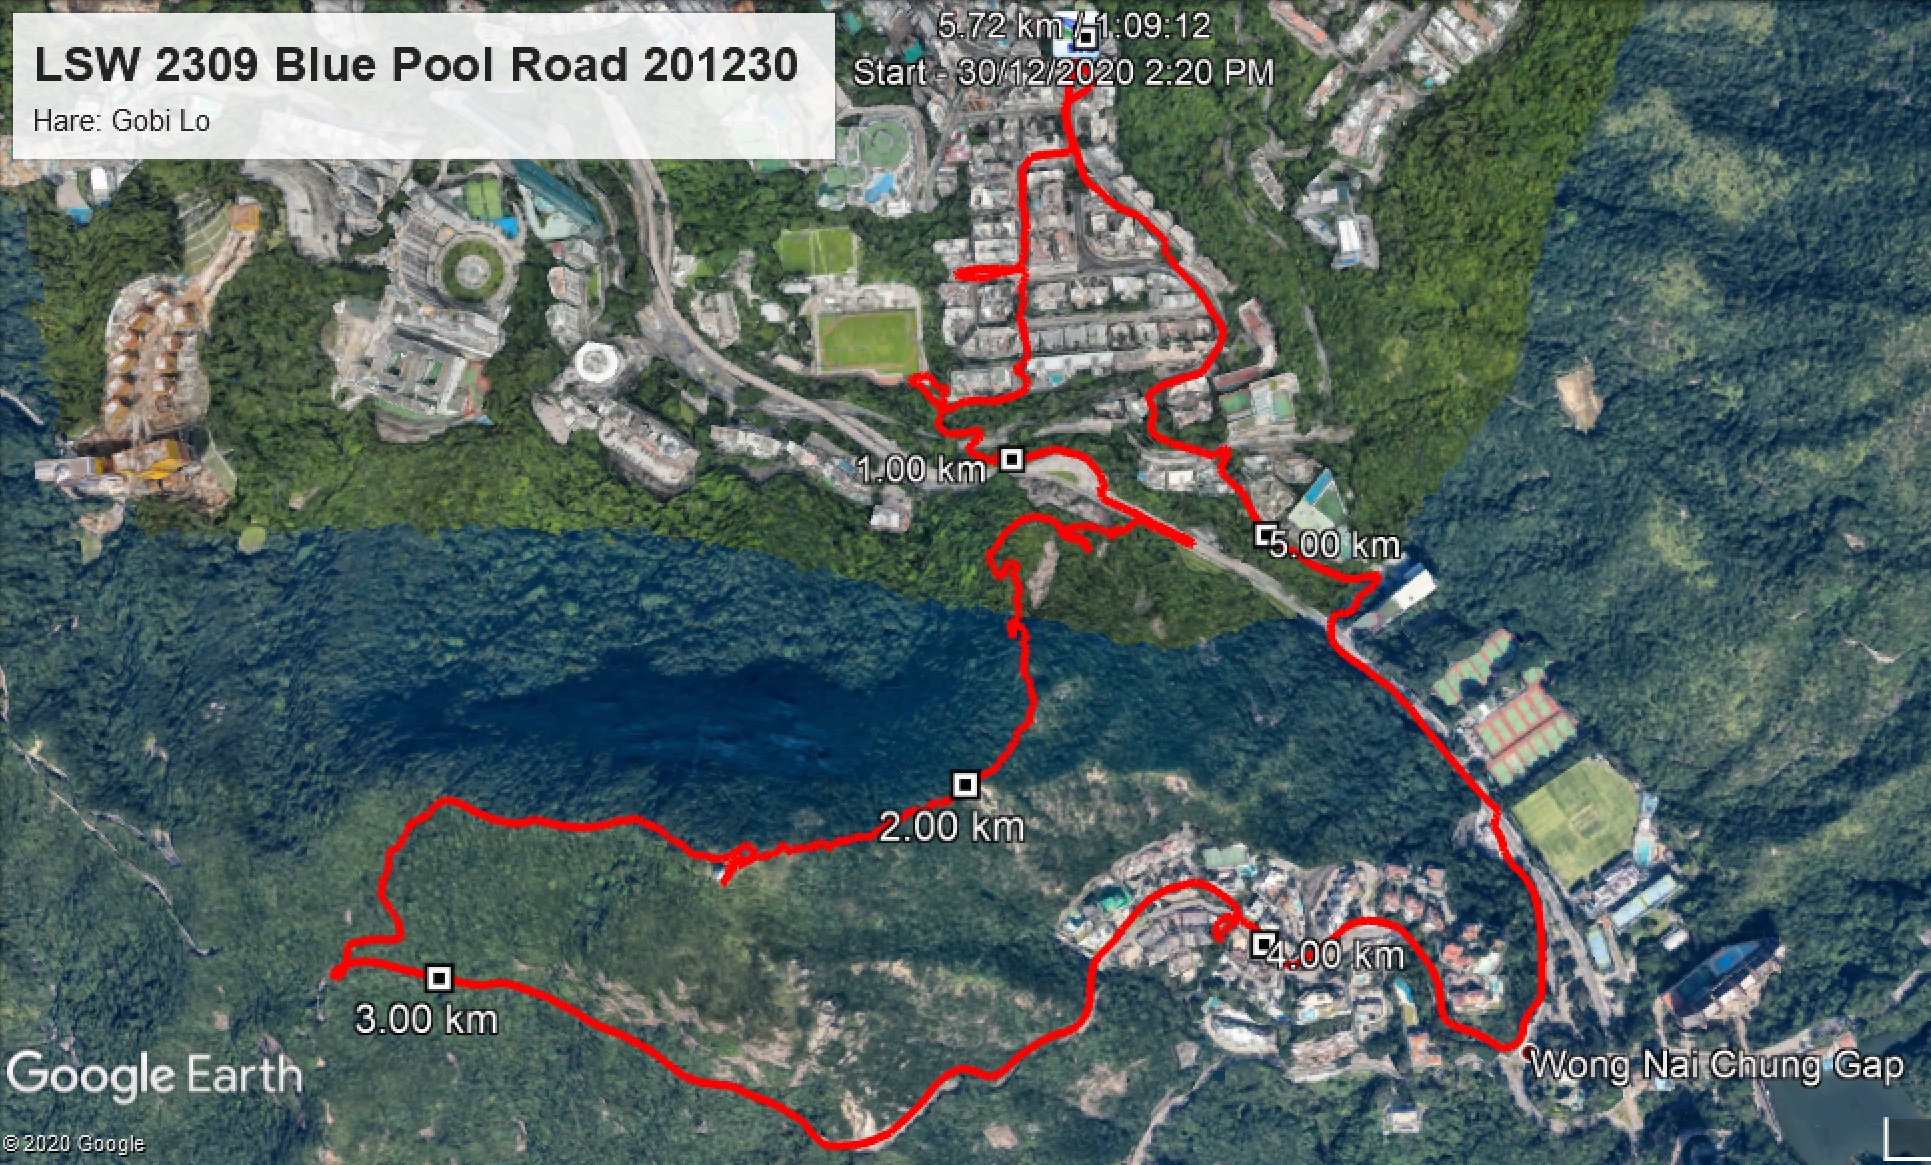 Blue Pool Road 201230 5.72km 69mins